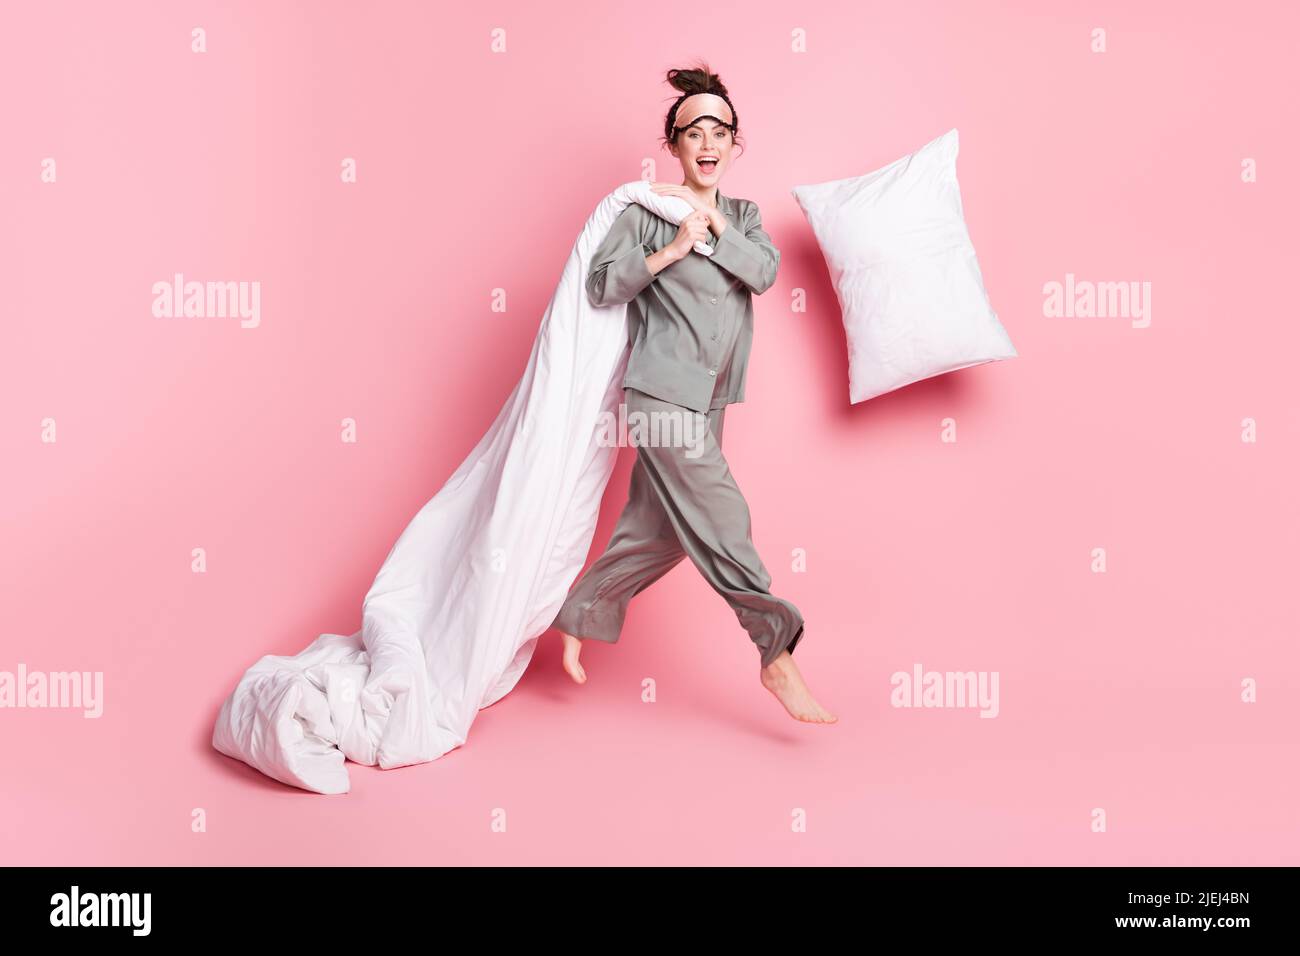 Volle Größe der sorglosen verrückten Person fallen Kissen Hände halten Decke haben Spaß isoliert auf rosa Hintergrund Stockfoto